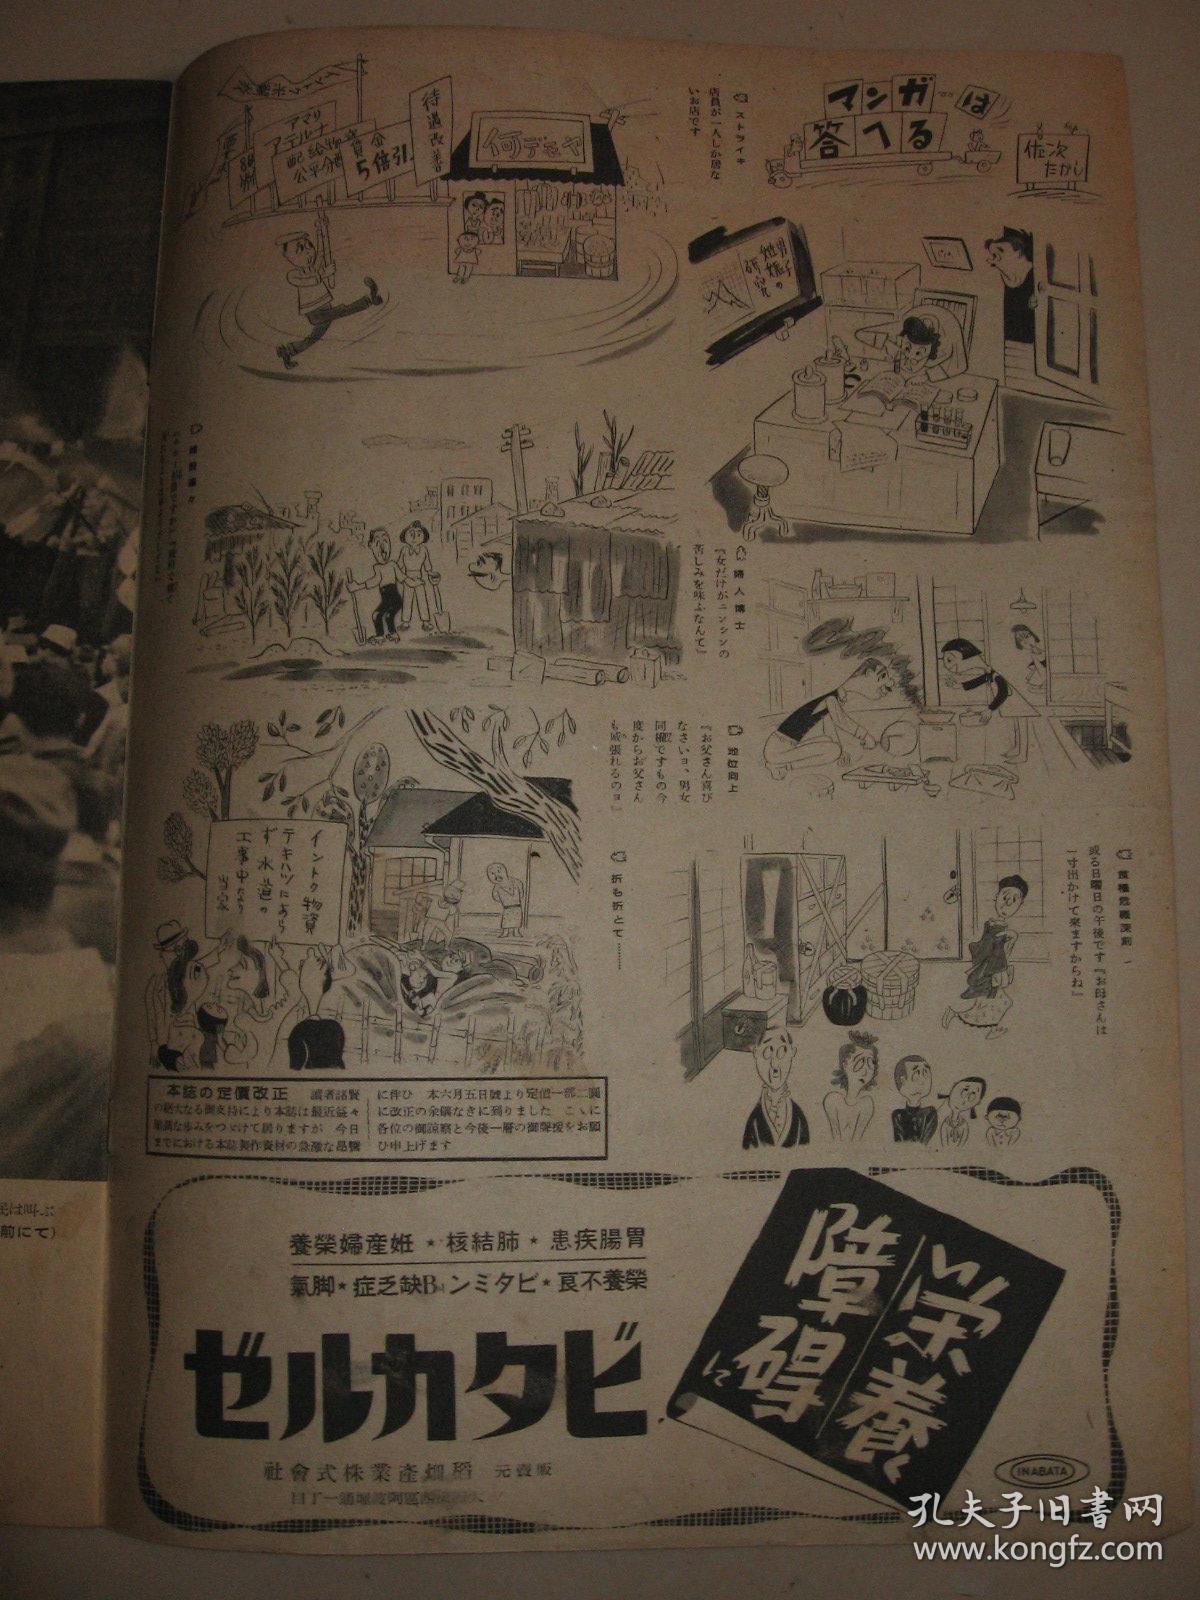 老画报 1946年6月5日アサヒグラフ《朝日新闻画报》